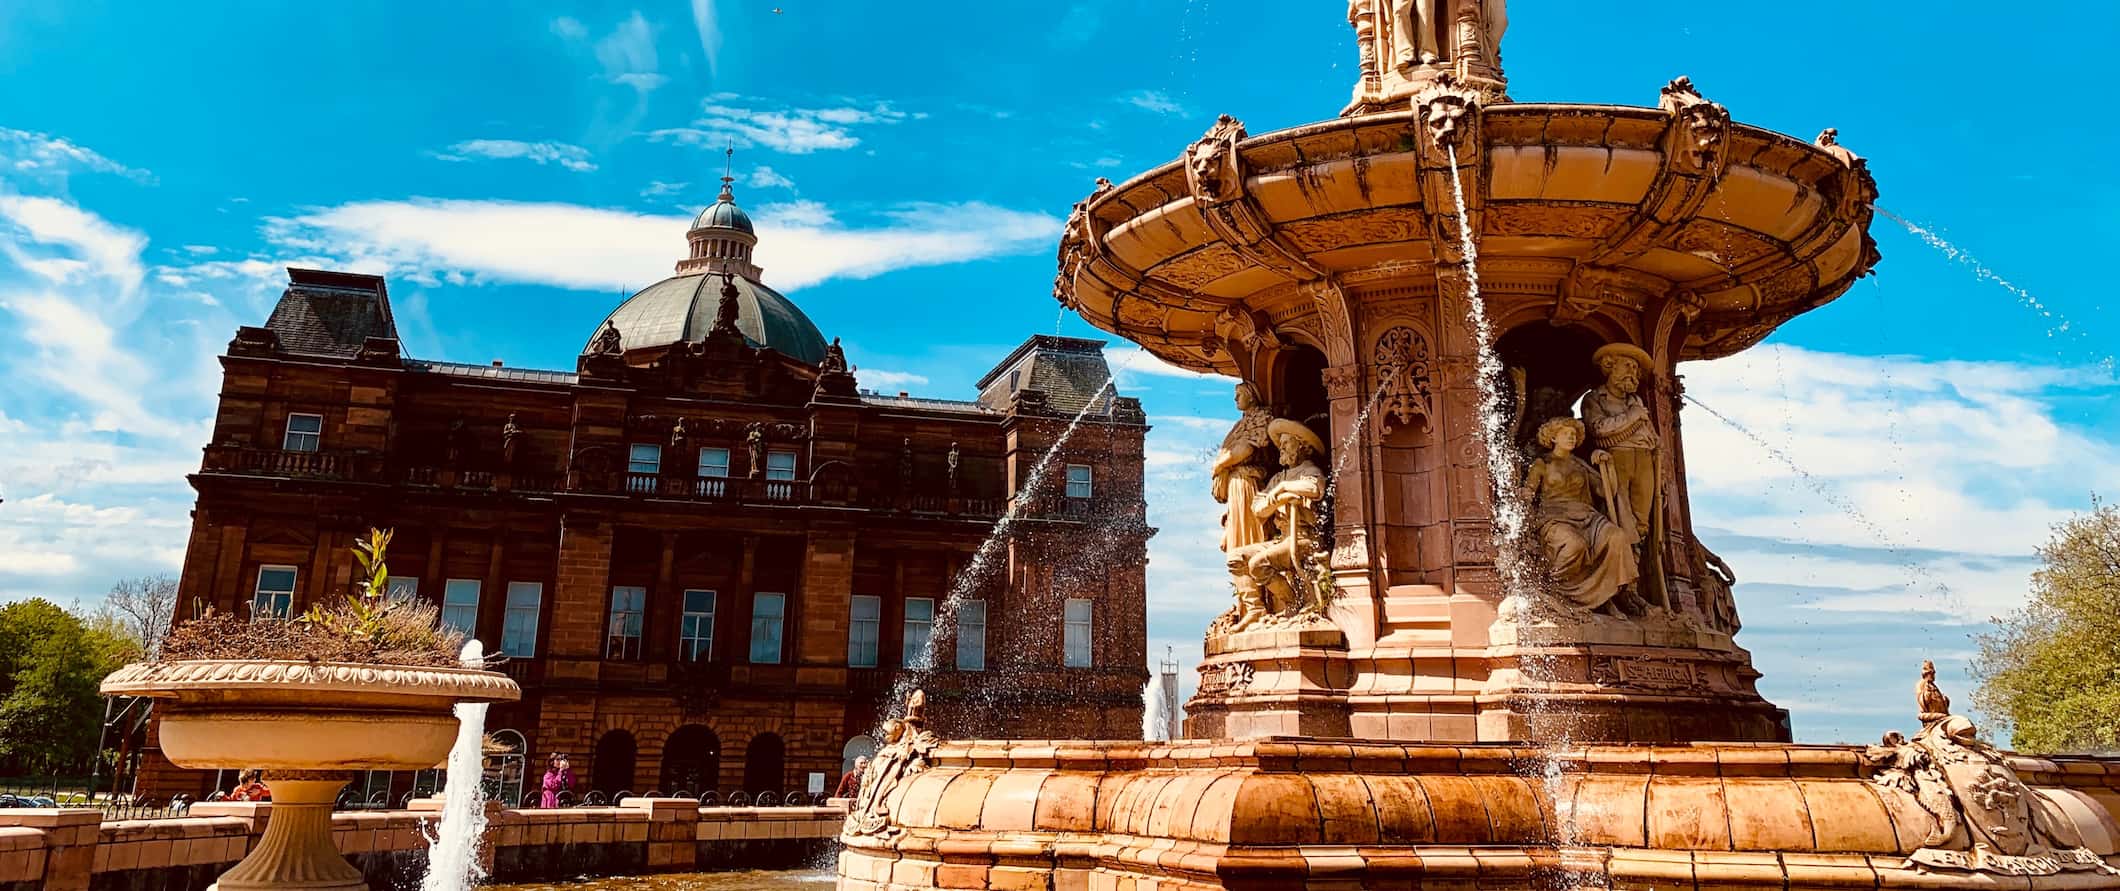 Edifícios históricos e a antiga fonte de Glasgow, na Escócia, em um dia ensolarado de verão.